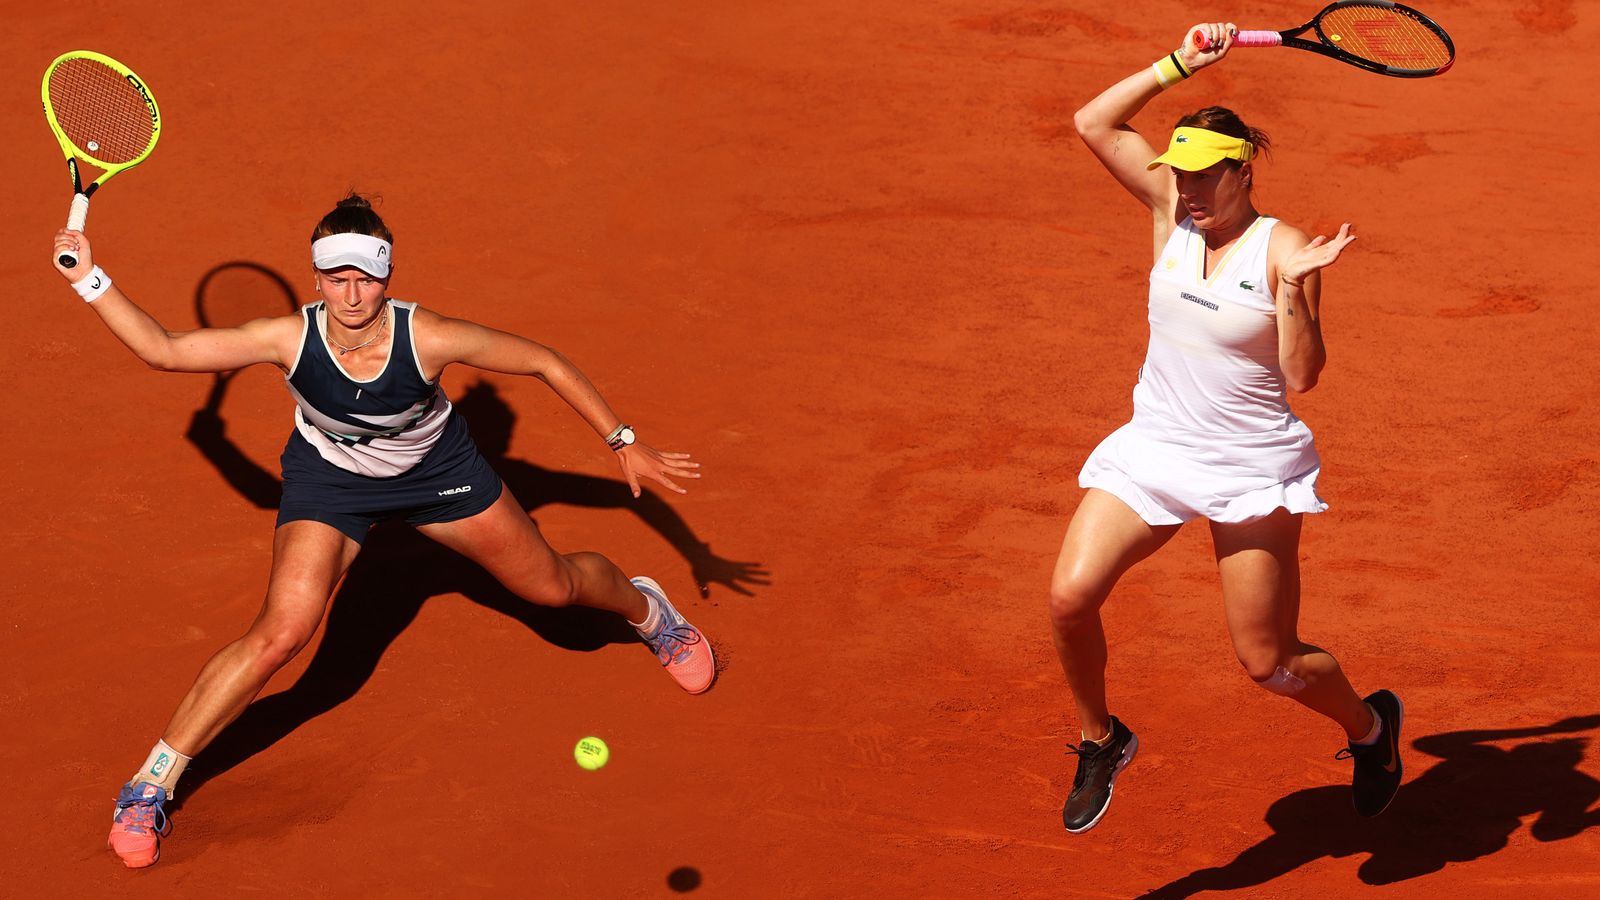 French Open: Barbora Krejcikova and Anastasia Pavlyuchenkova to duel for title | Tennis News ...